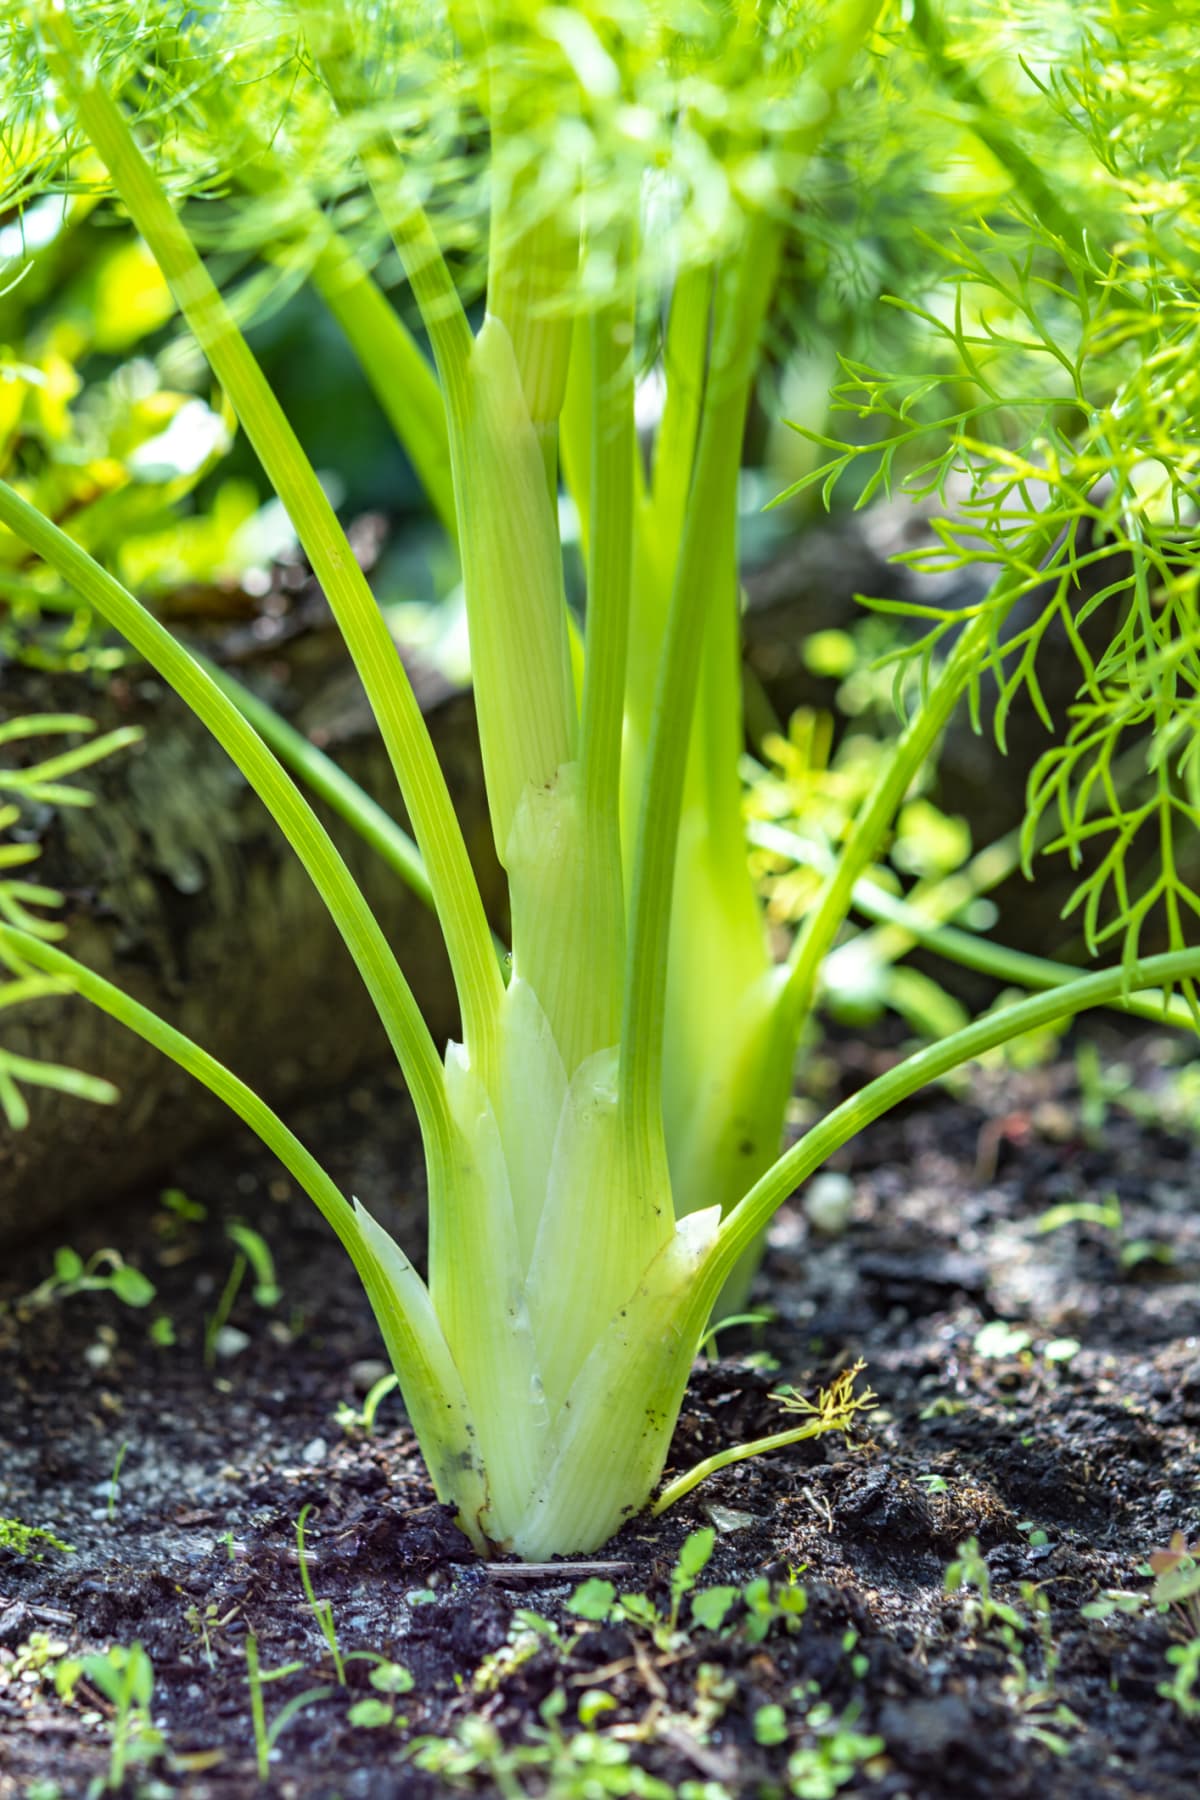 A fennel plant growing in soil